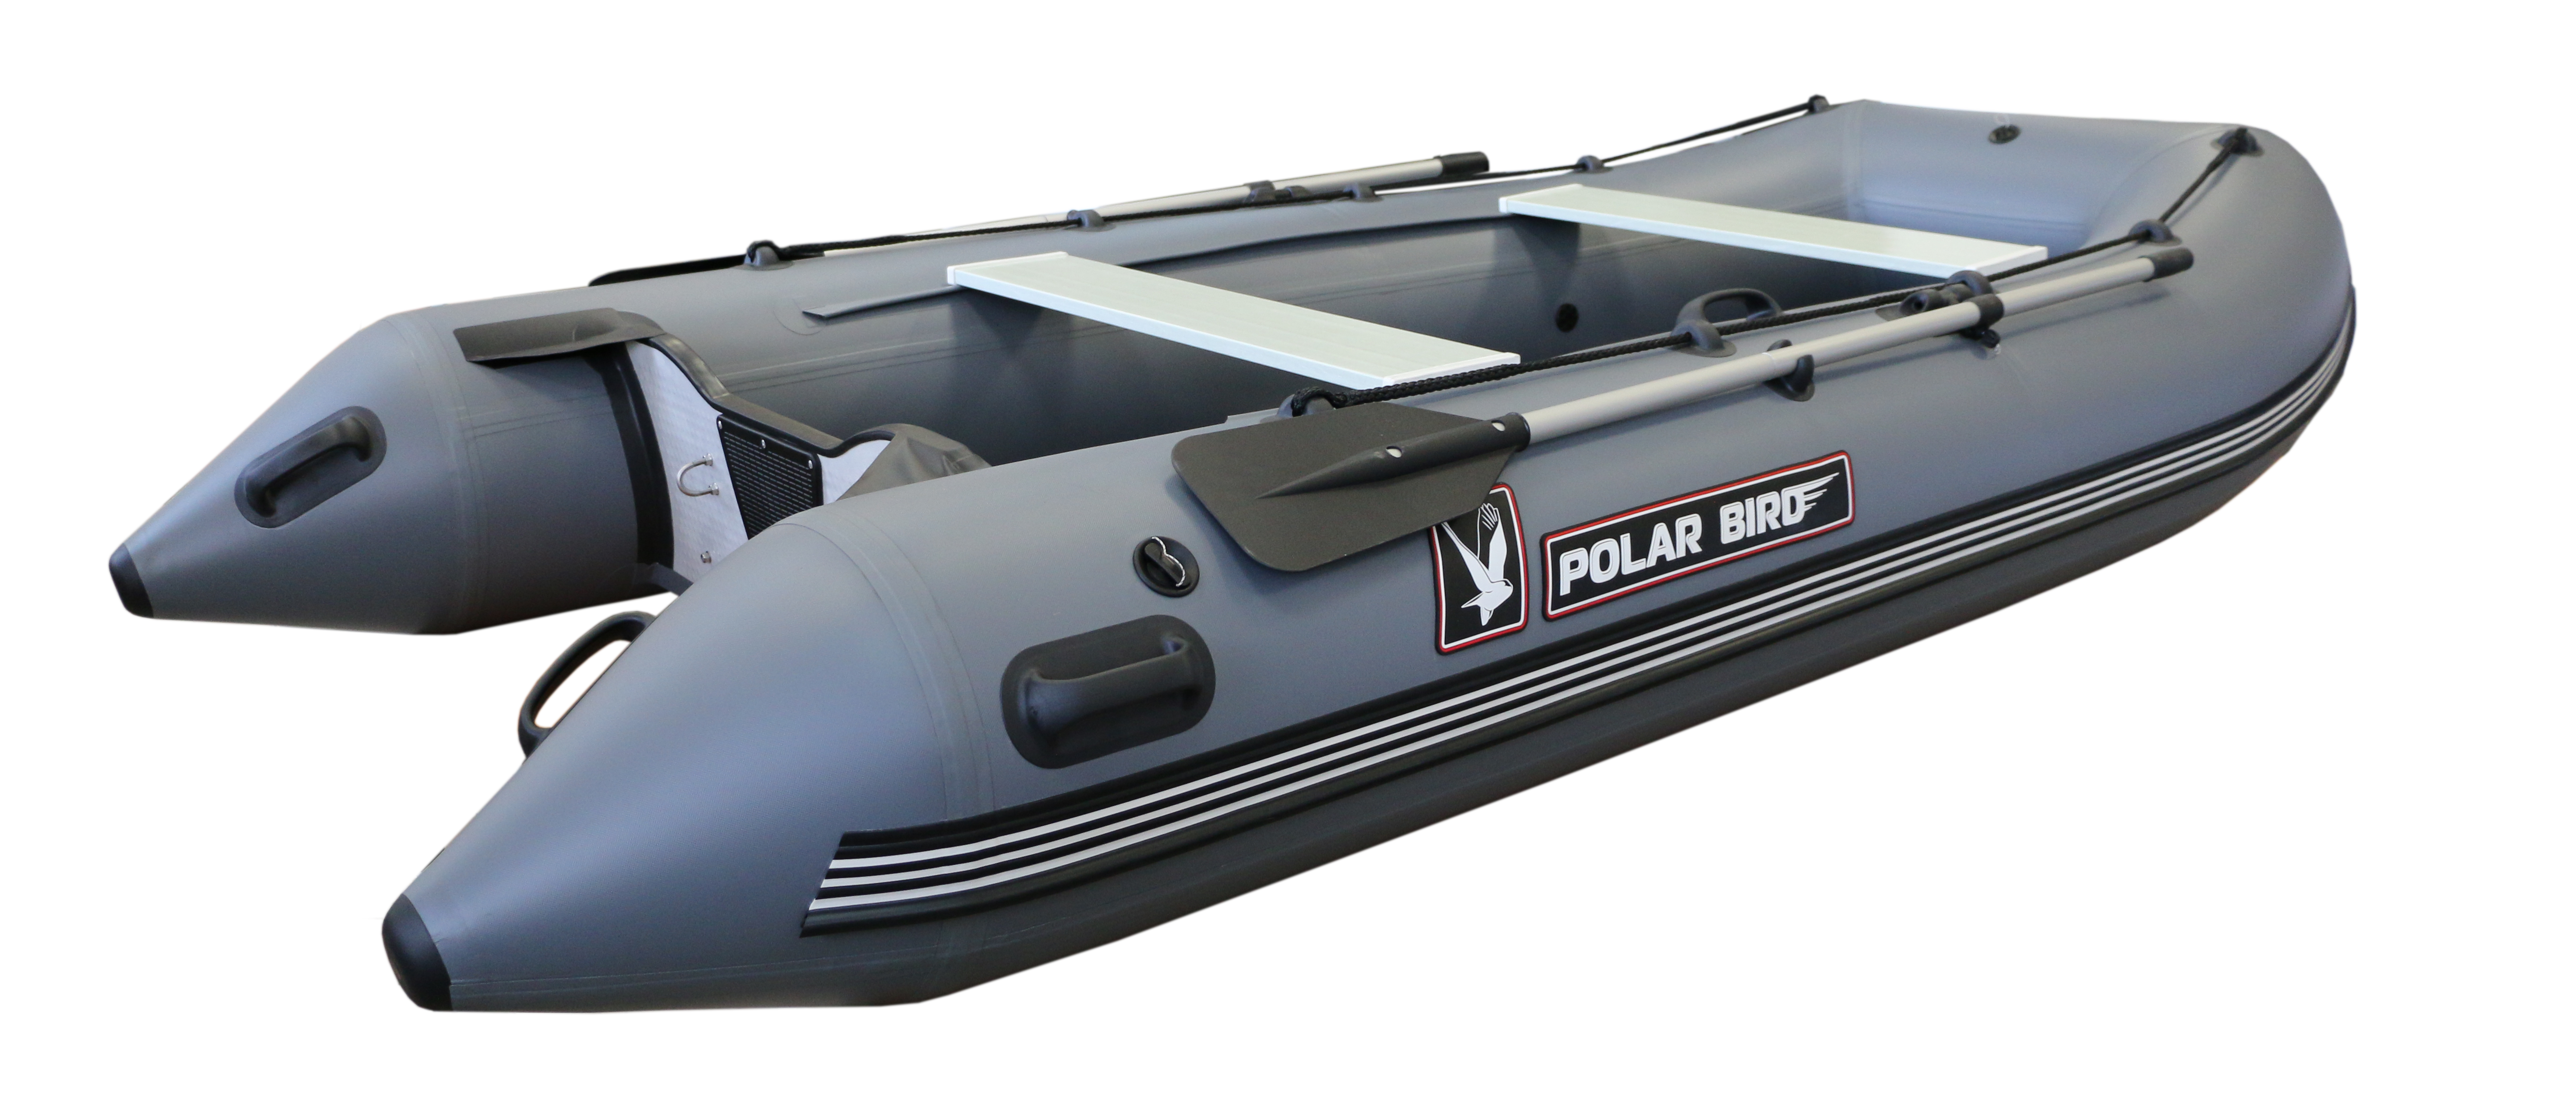 Лодка Polar Bird модель PB-400e Eagle. Лодка Polar Bird 400e New Eagle. Лодок ПВХ Полар Берд 400. Polar Bird 380e Eagle Орлан. Купить лодку пвх полар